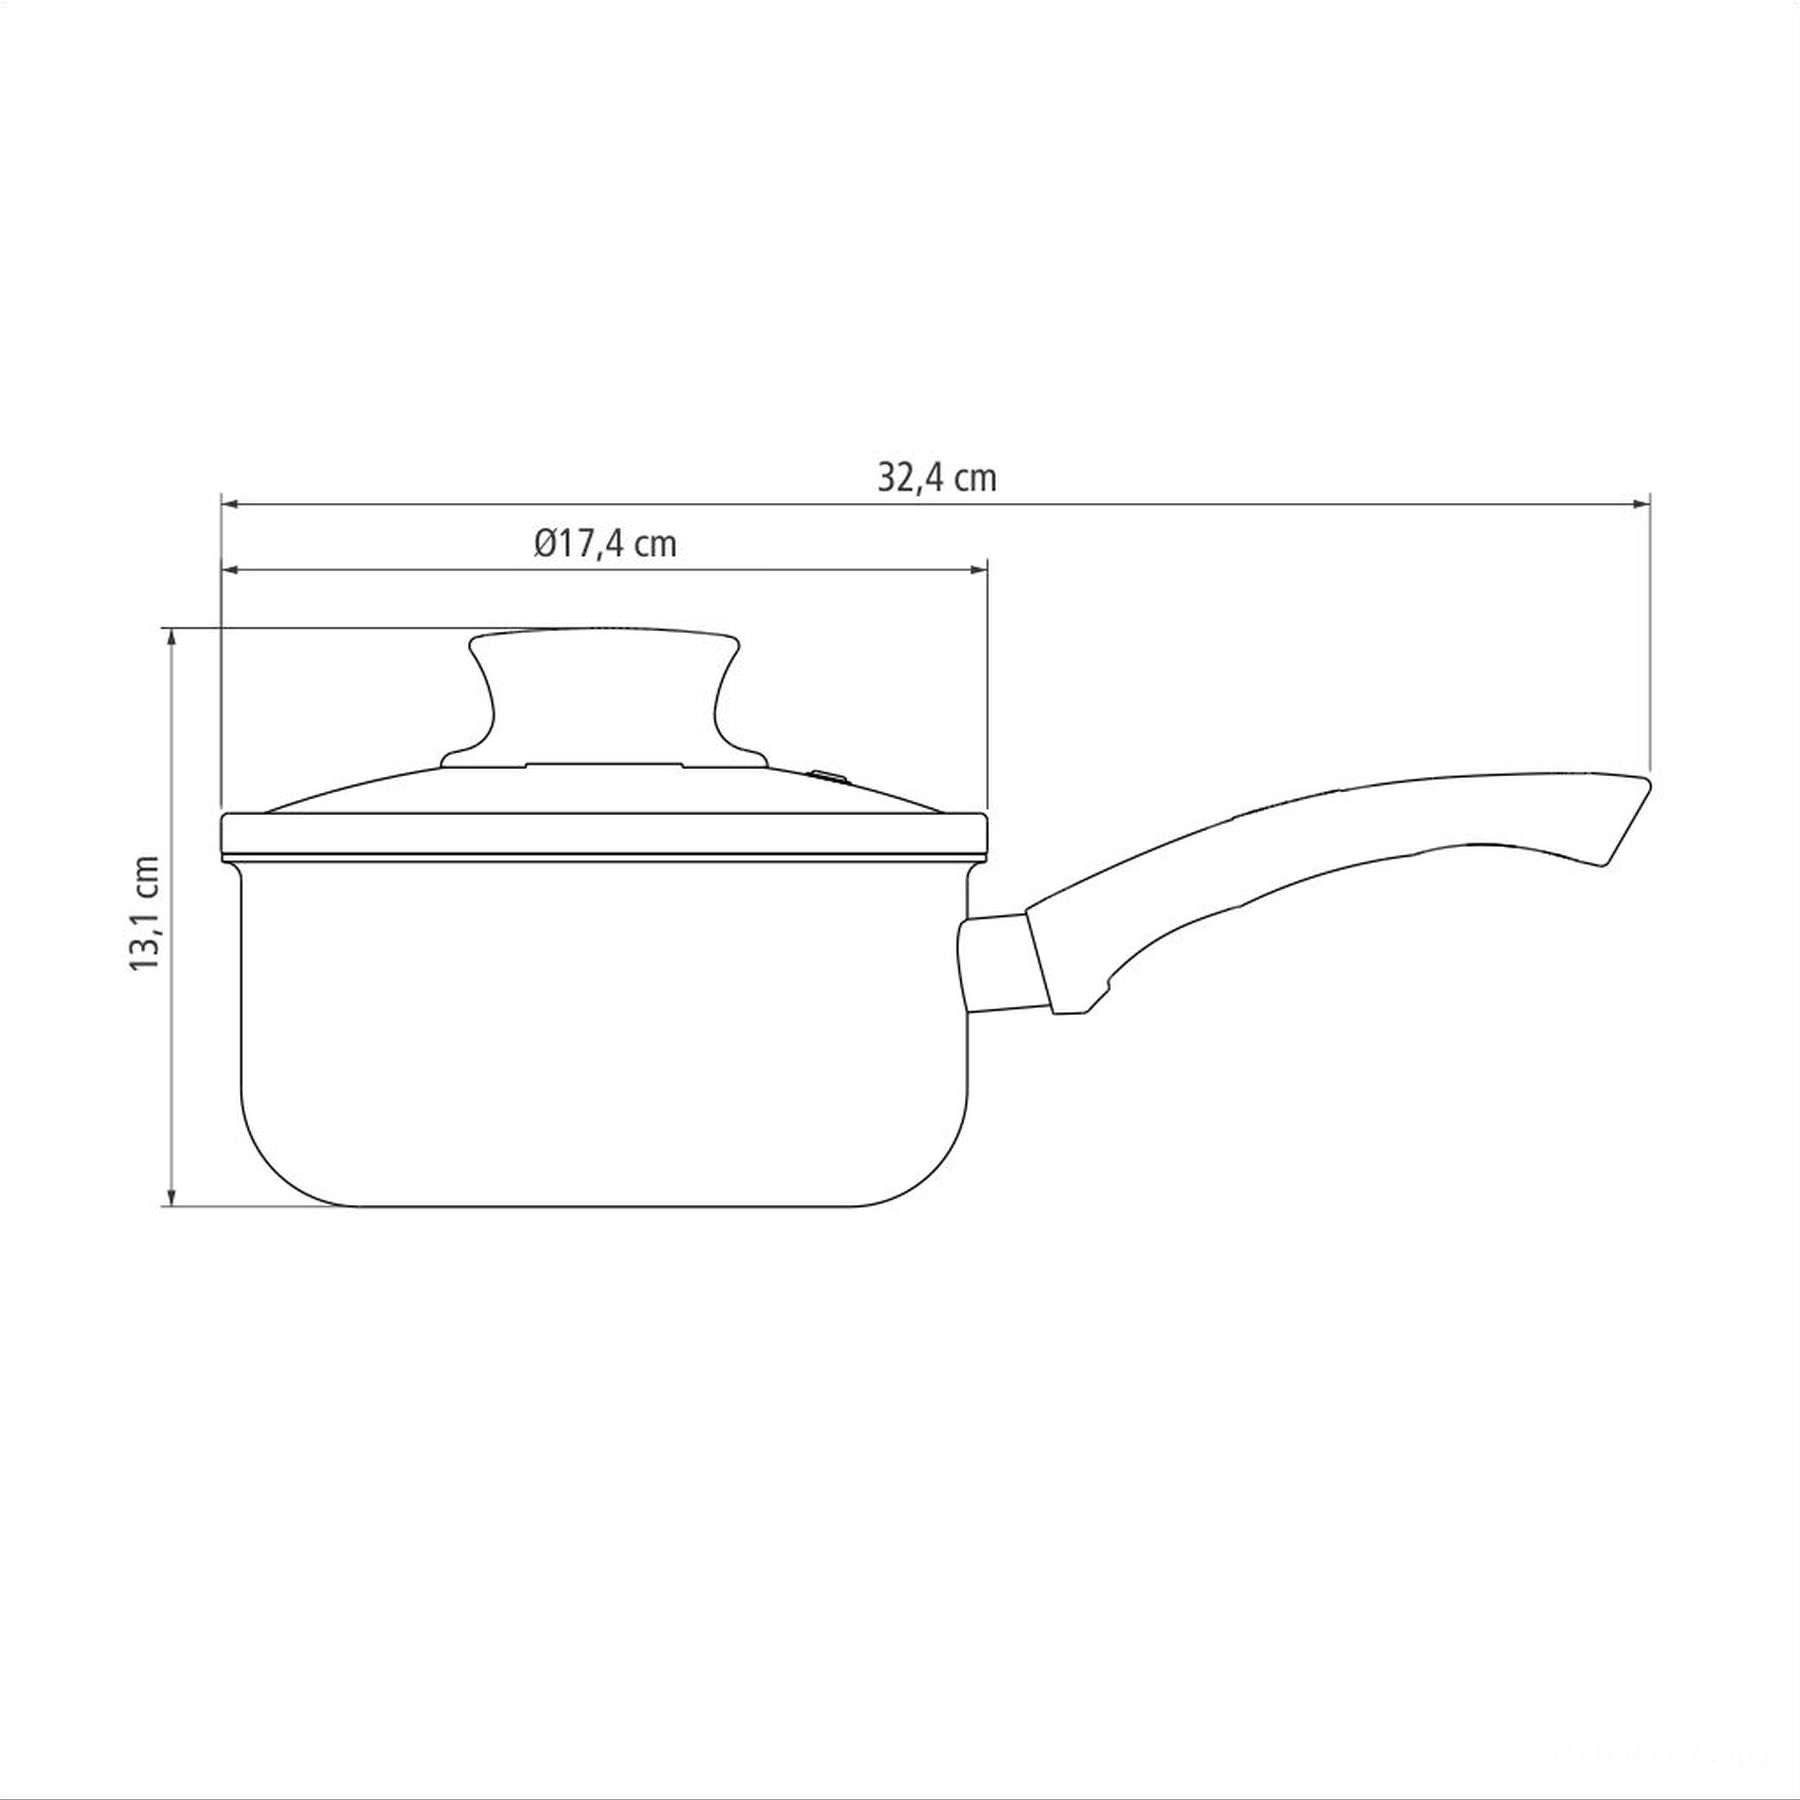 Panela Paris Antiaderente Starflon Max Vermelho com Tampa de Vidro 16 cm 1,5 L